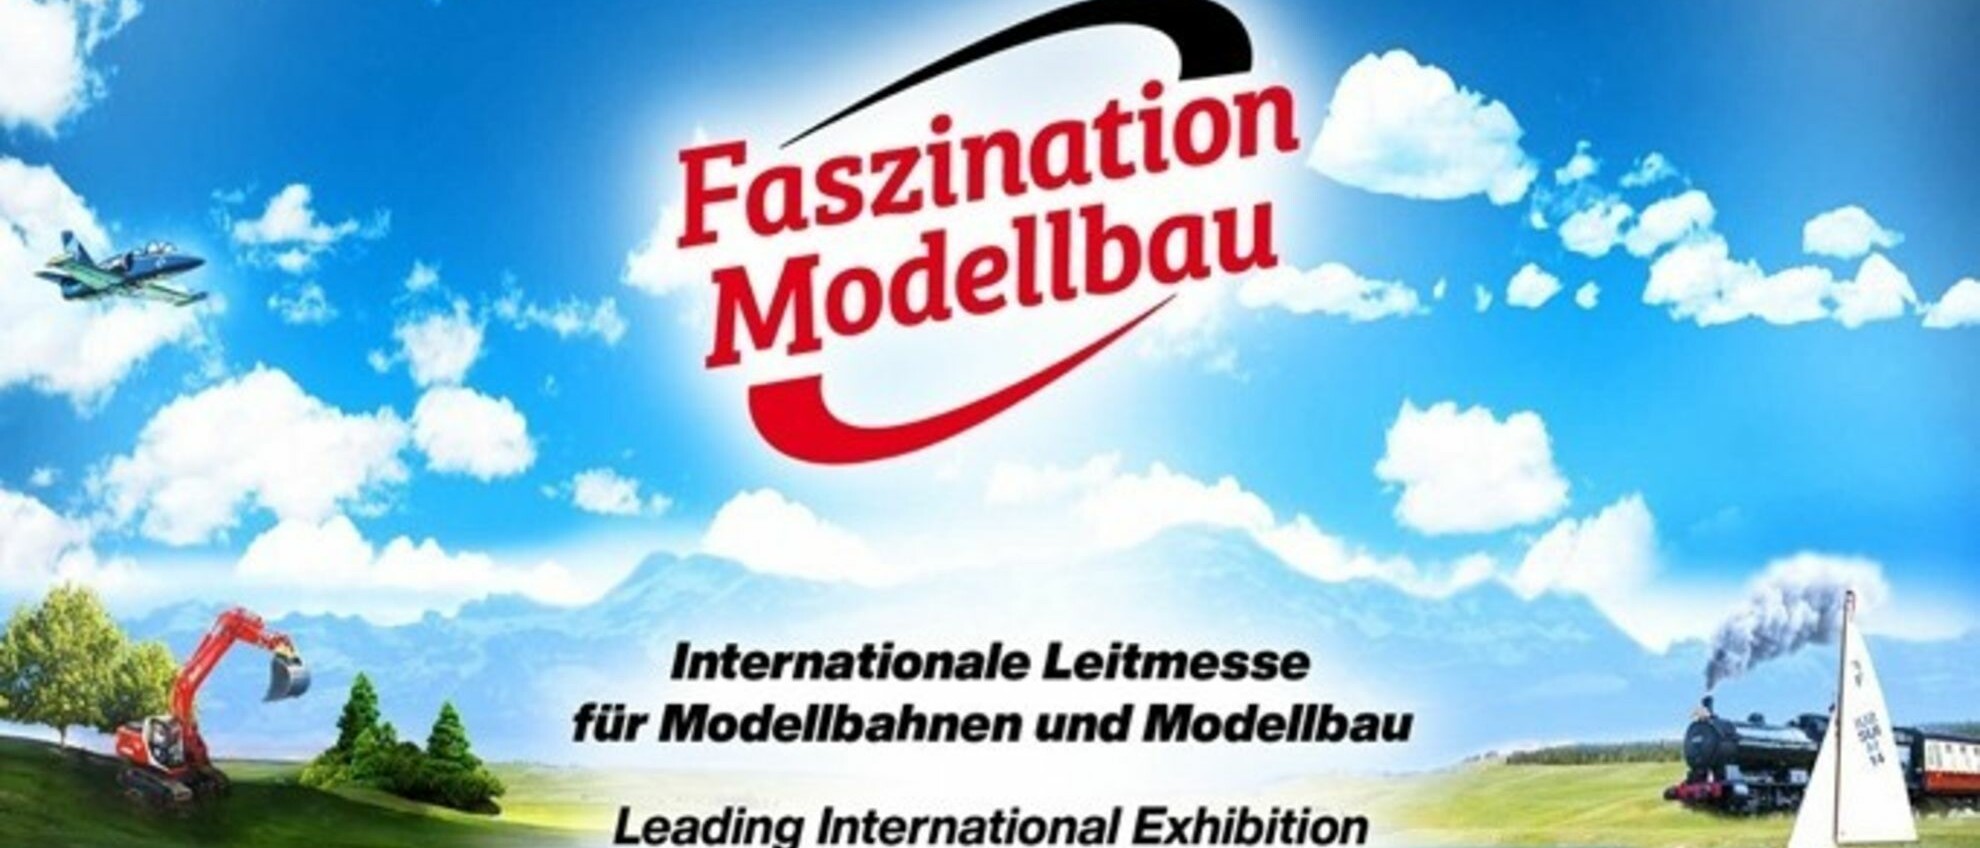 Faszination Modellbau Internationale Leitmesse für Modellbahnen und Modellbau csm Presseinfo 03 Zu Land Zu Wasser und in der Luft c6e9aa3bac 1 uai